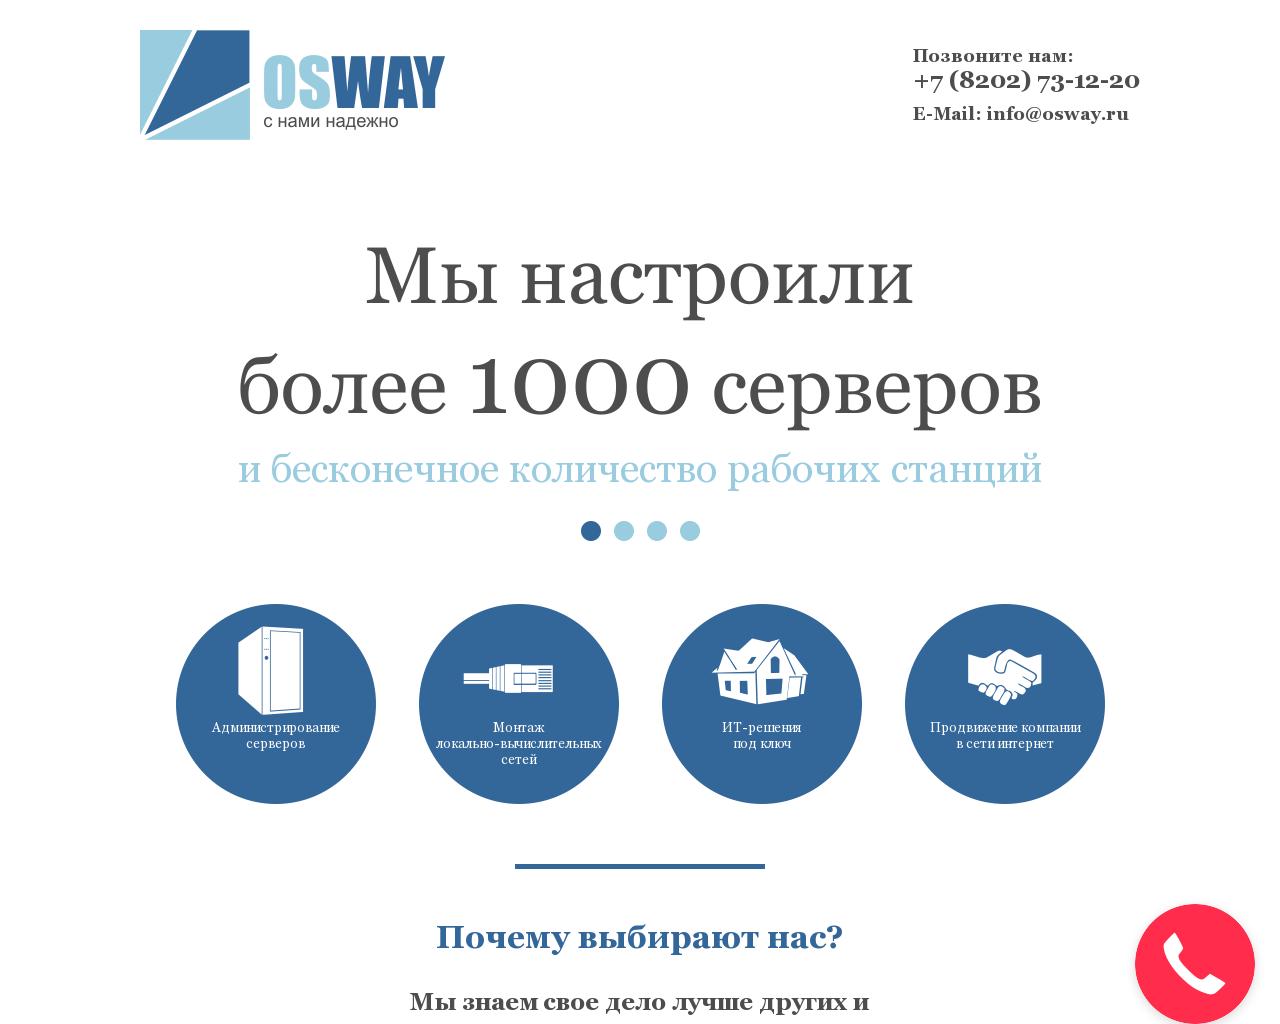 Изображение сайта osway.ru в разрешении 1280x1024